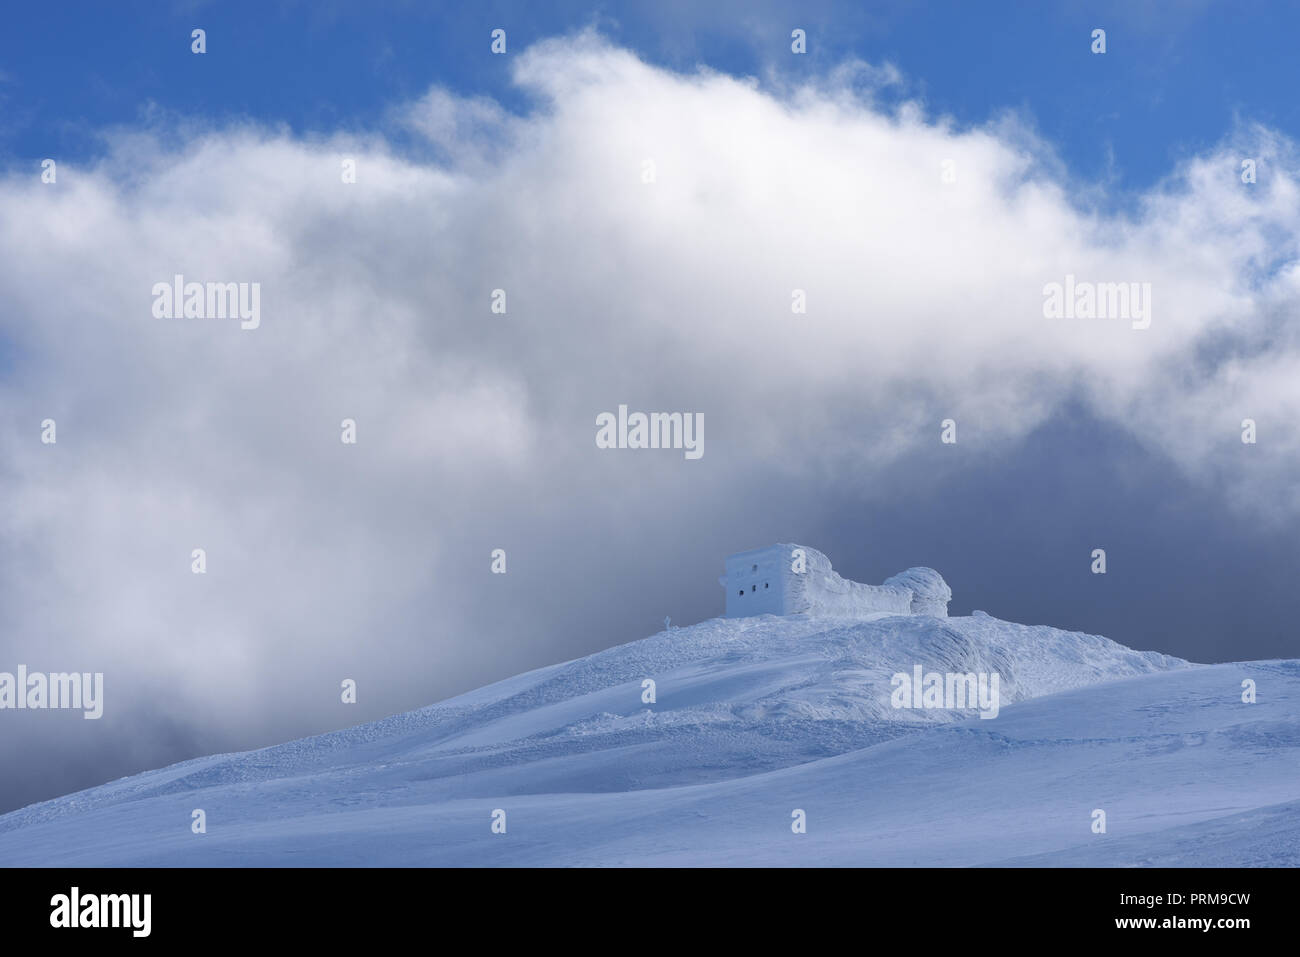 Paesaggio invernale in montagna. Il vecchio osservatorio sulla parte superiore. Bella la texture di neve e neve. Carpazi, Ucraina, Europa Foto Stock